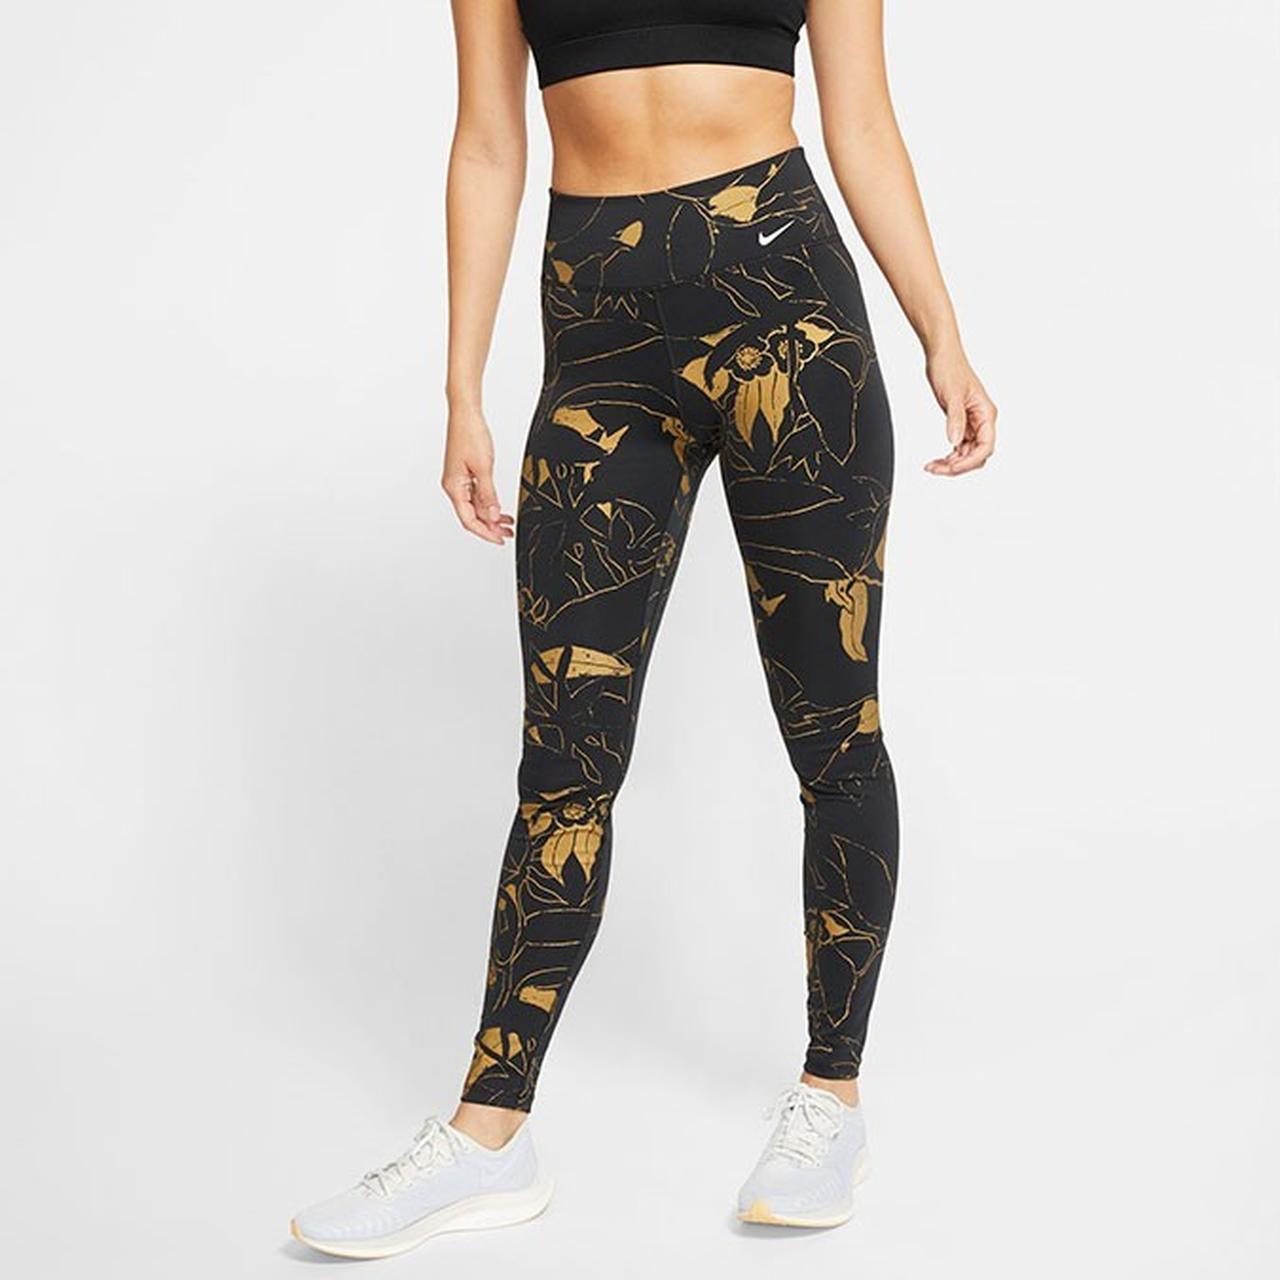 Nike Dri Fit Just Do It Black/Gold Leggings